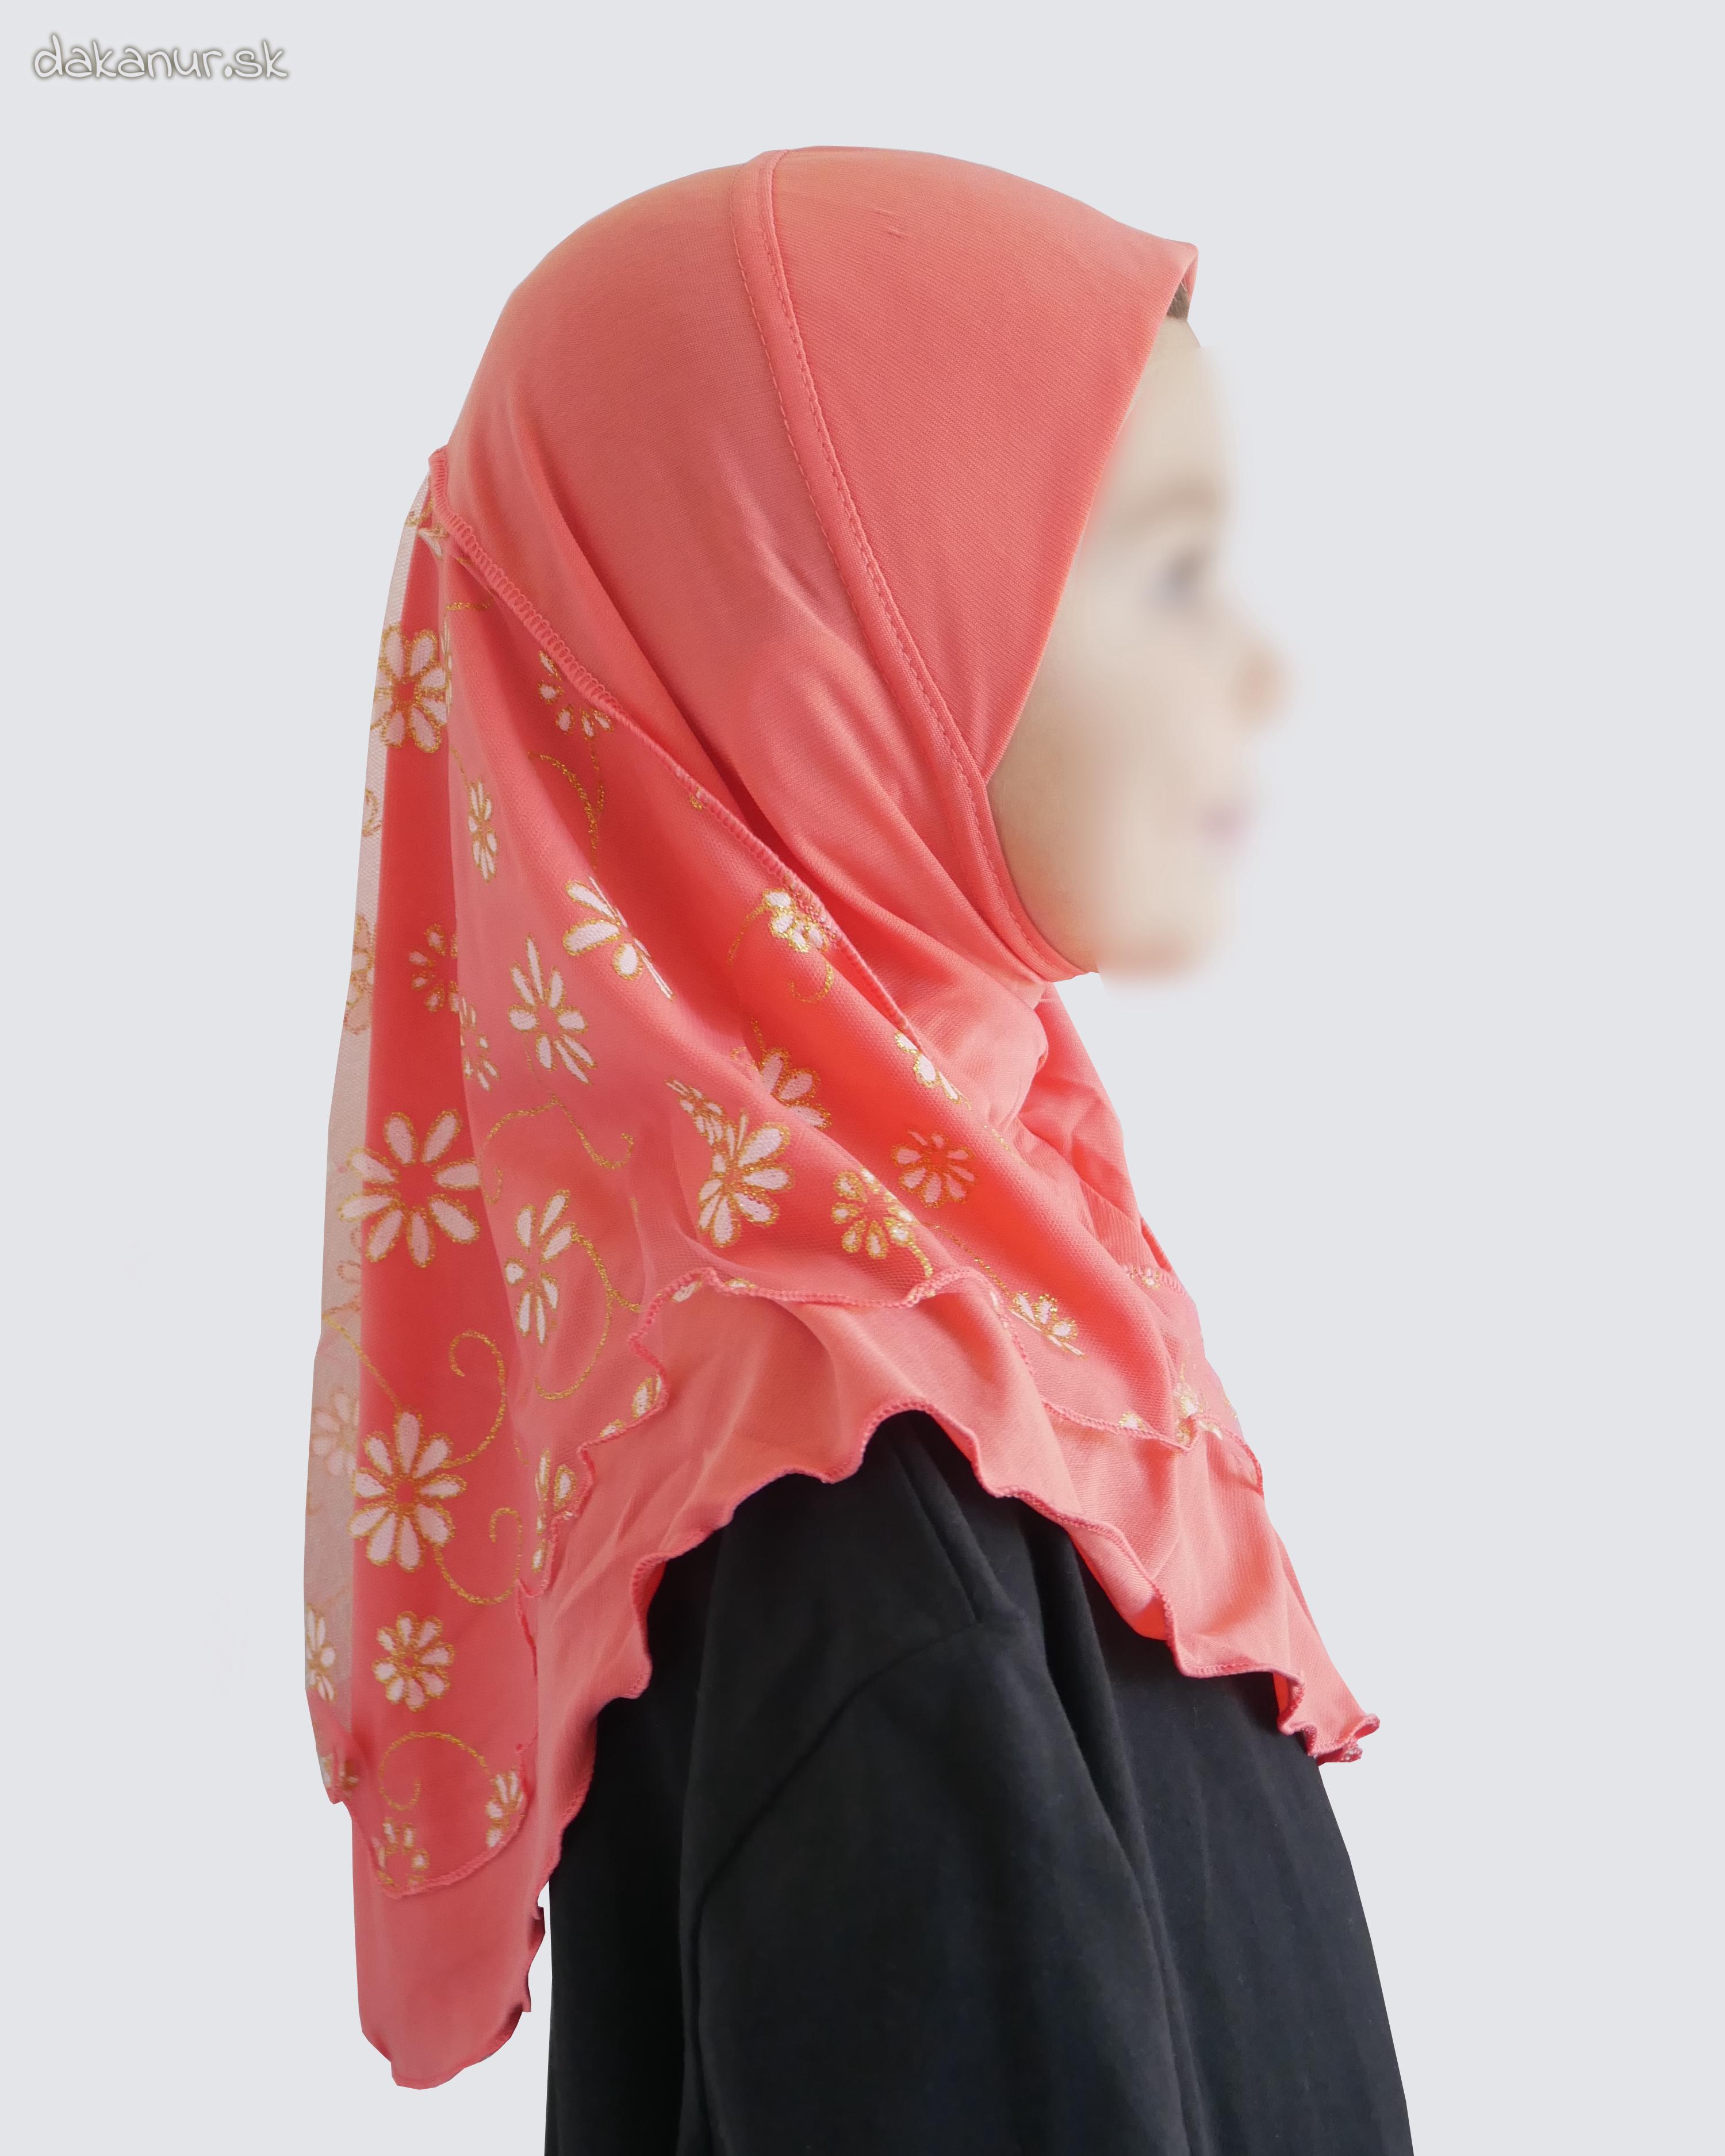 Detský korálový hijáb s kvietkovanou potlačou